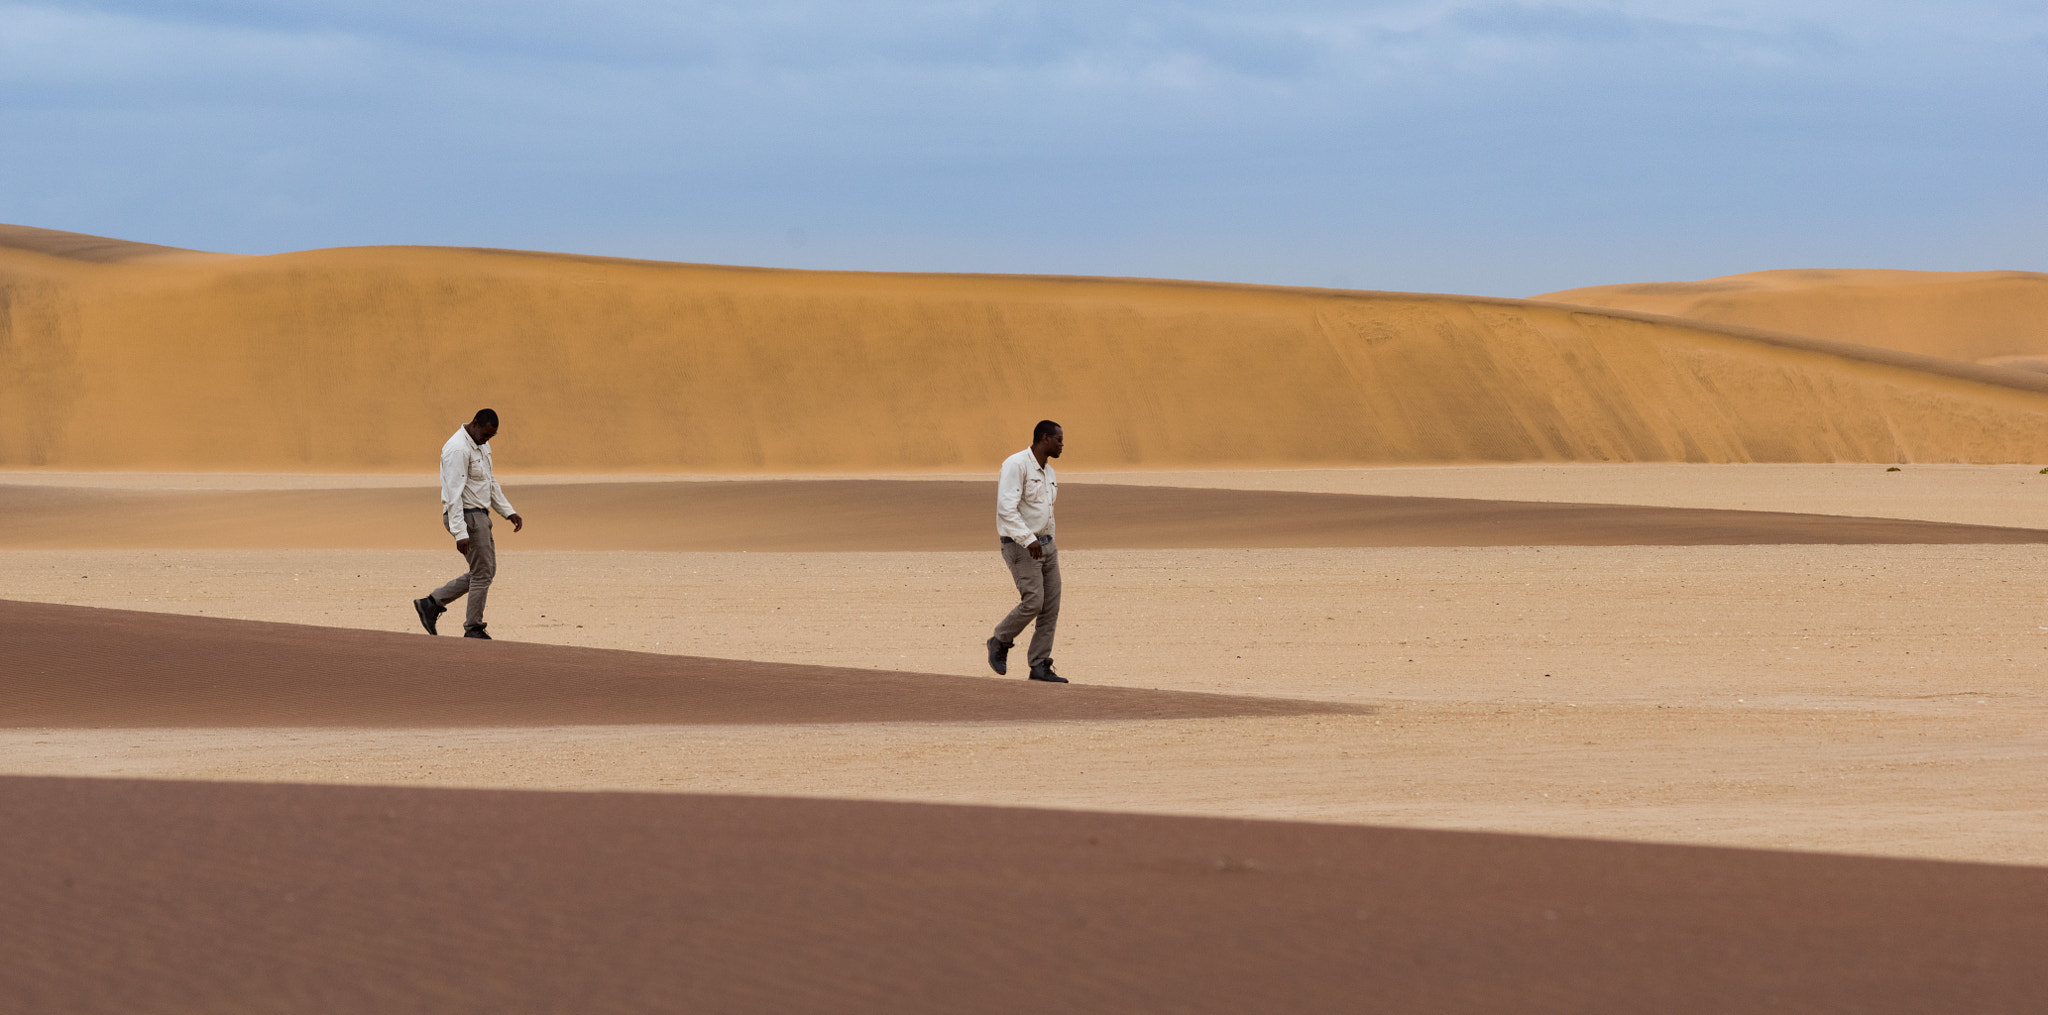 Pentax K-3 sample photo. Namib desert photography